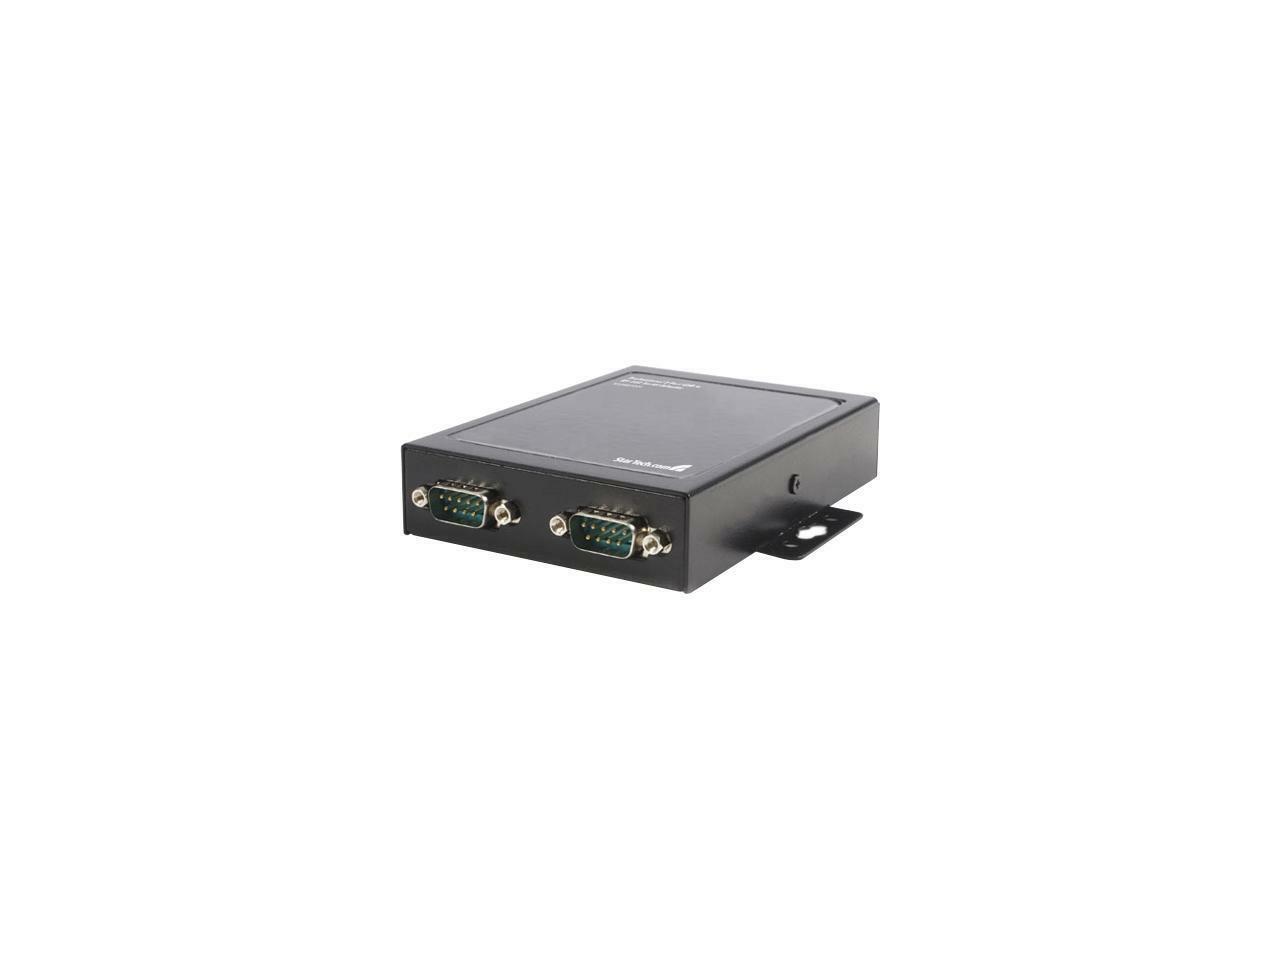 StarTech.com ICUSB2322X USB to Serial Adapter - 2 Port - Wall Mount - COM Port R